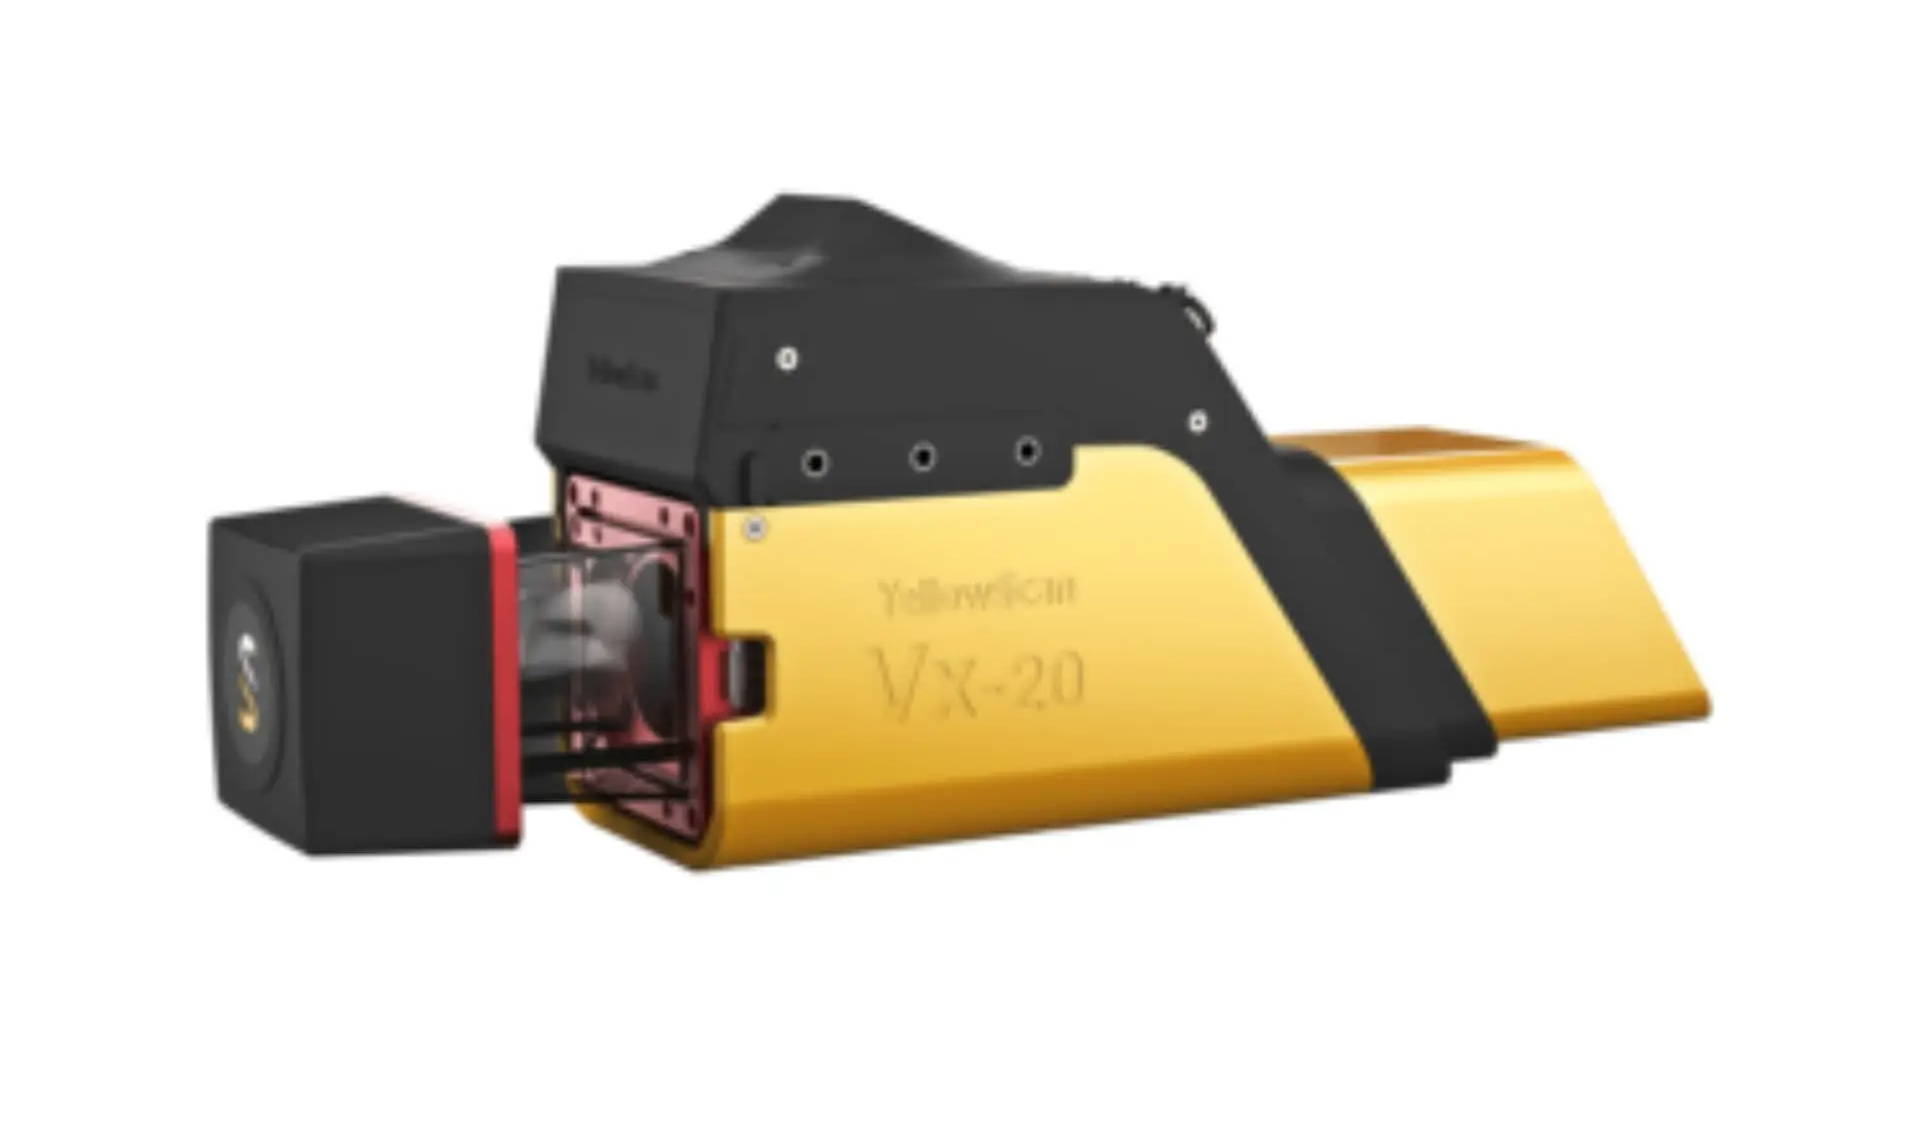 YellowScan VX20 Series